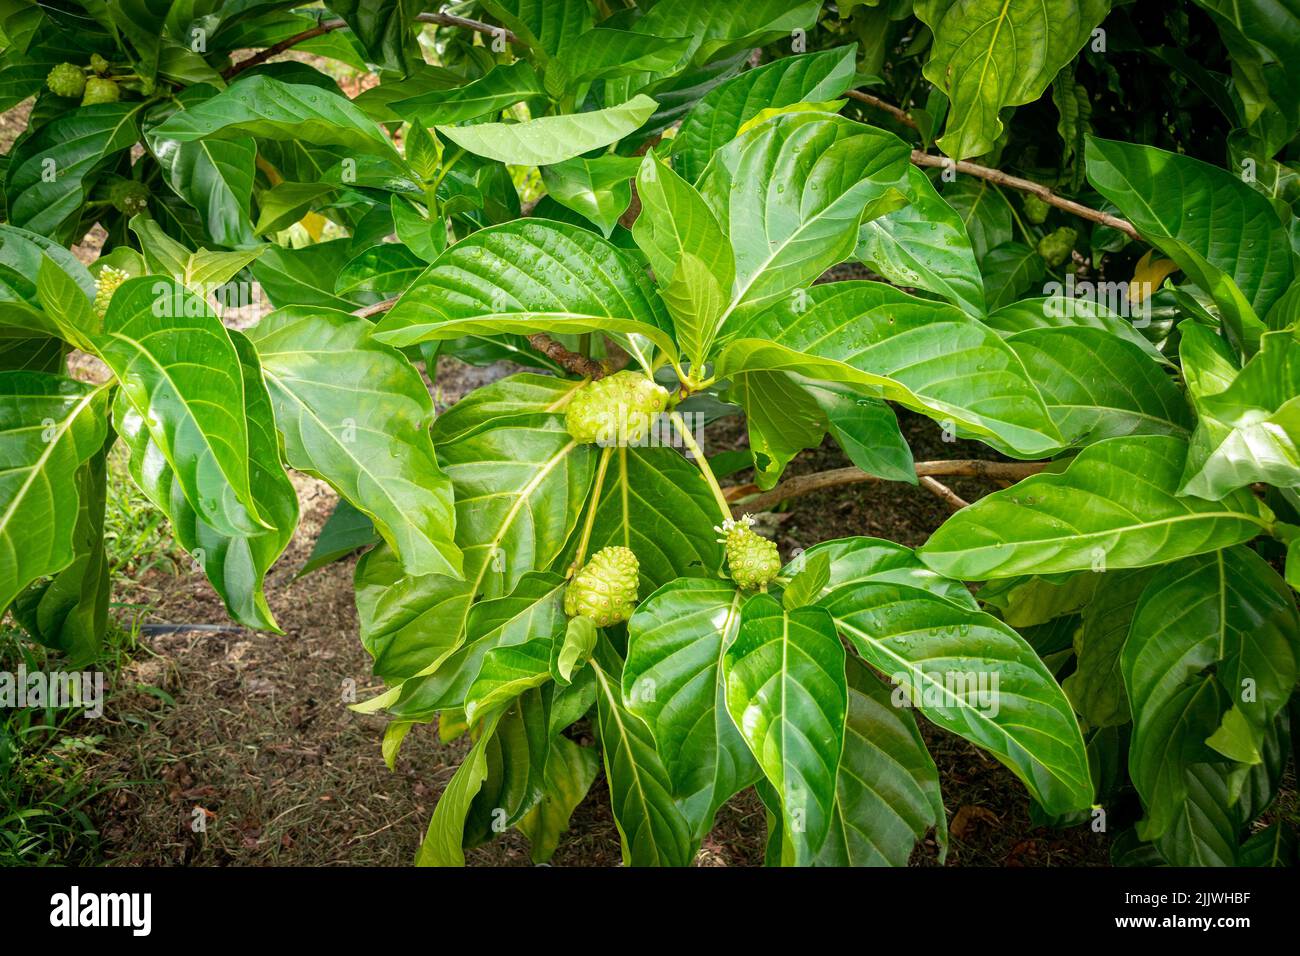 morinda citrifolia fruit tree growing in a Florida garden Stock Photo